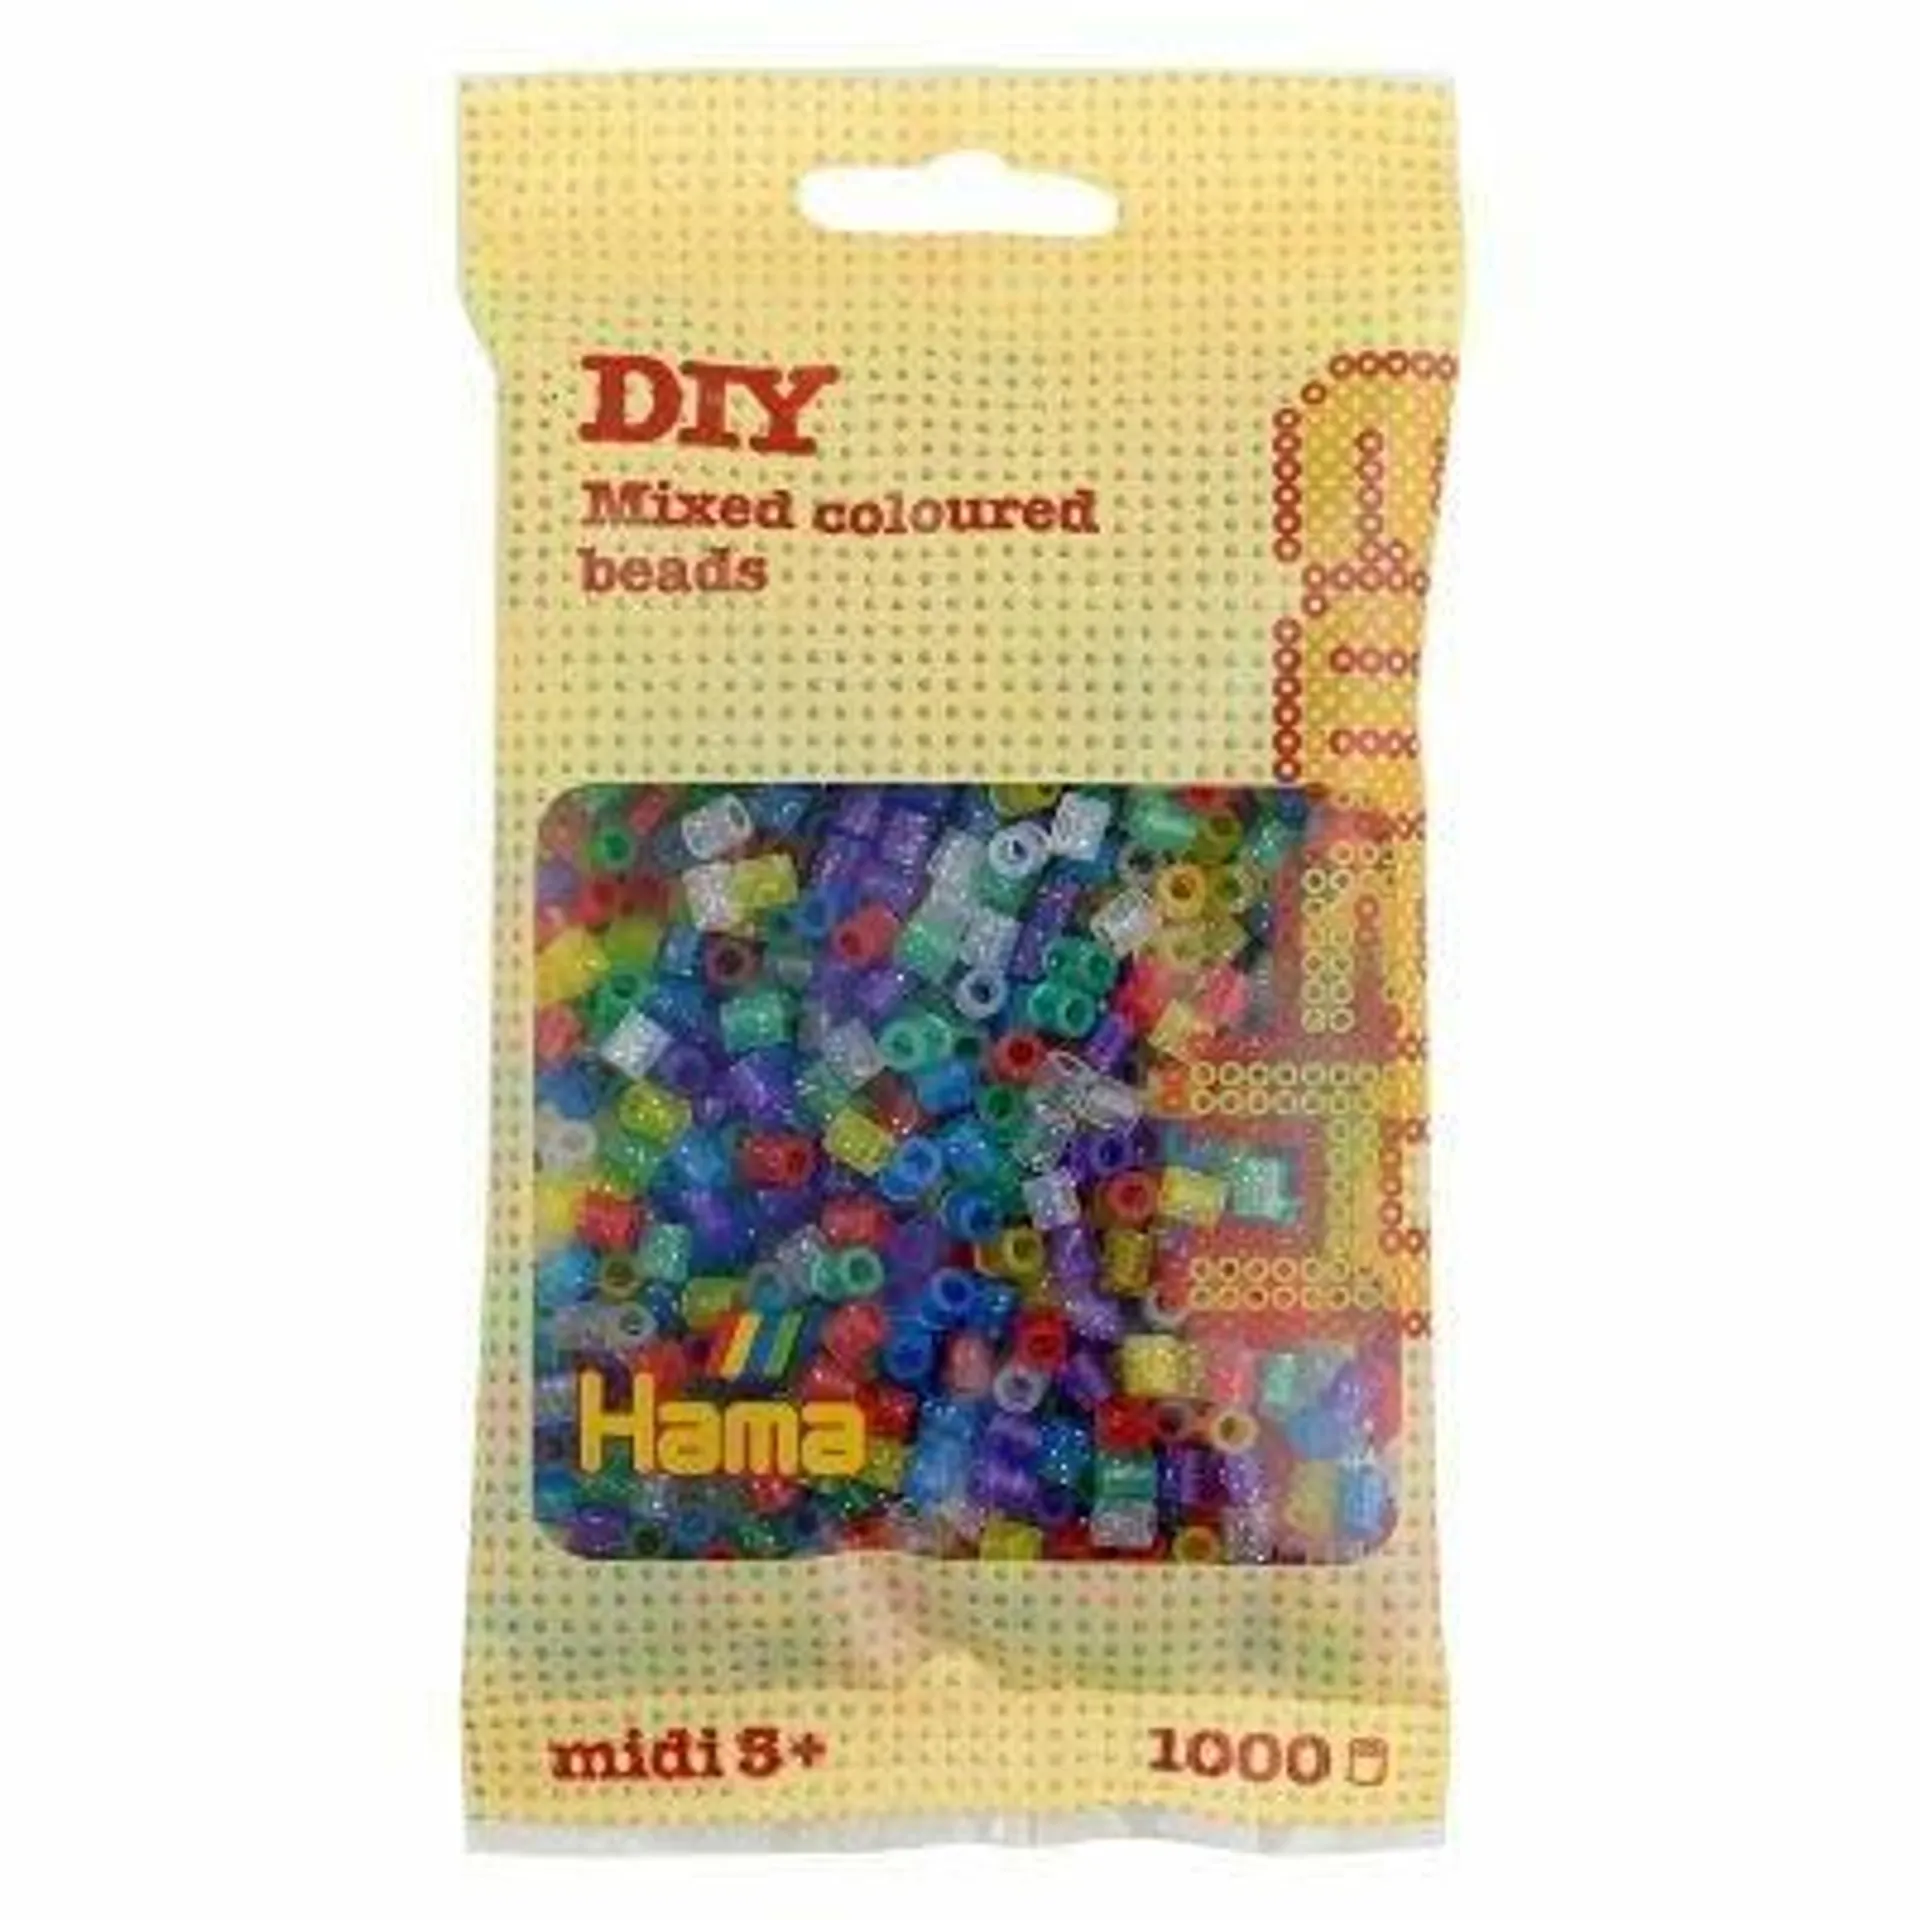 Hama Midi - strijkkralen - 1000 stuks - translucent glitter mix 54